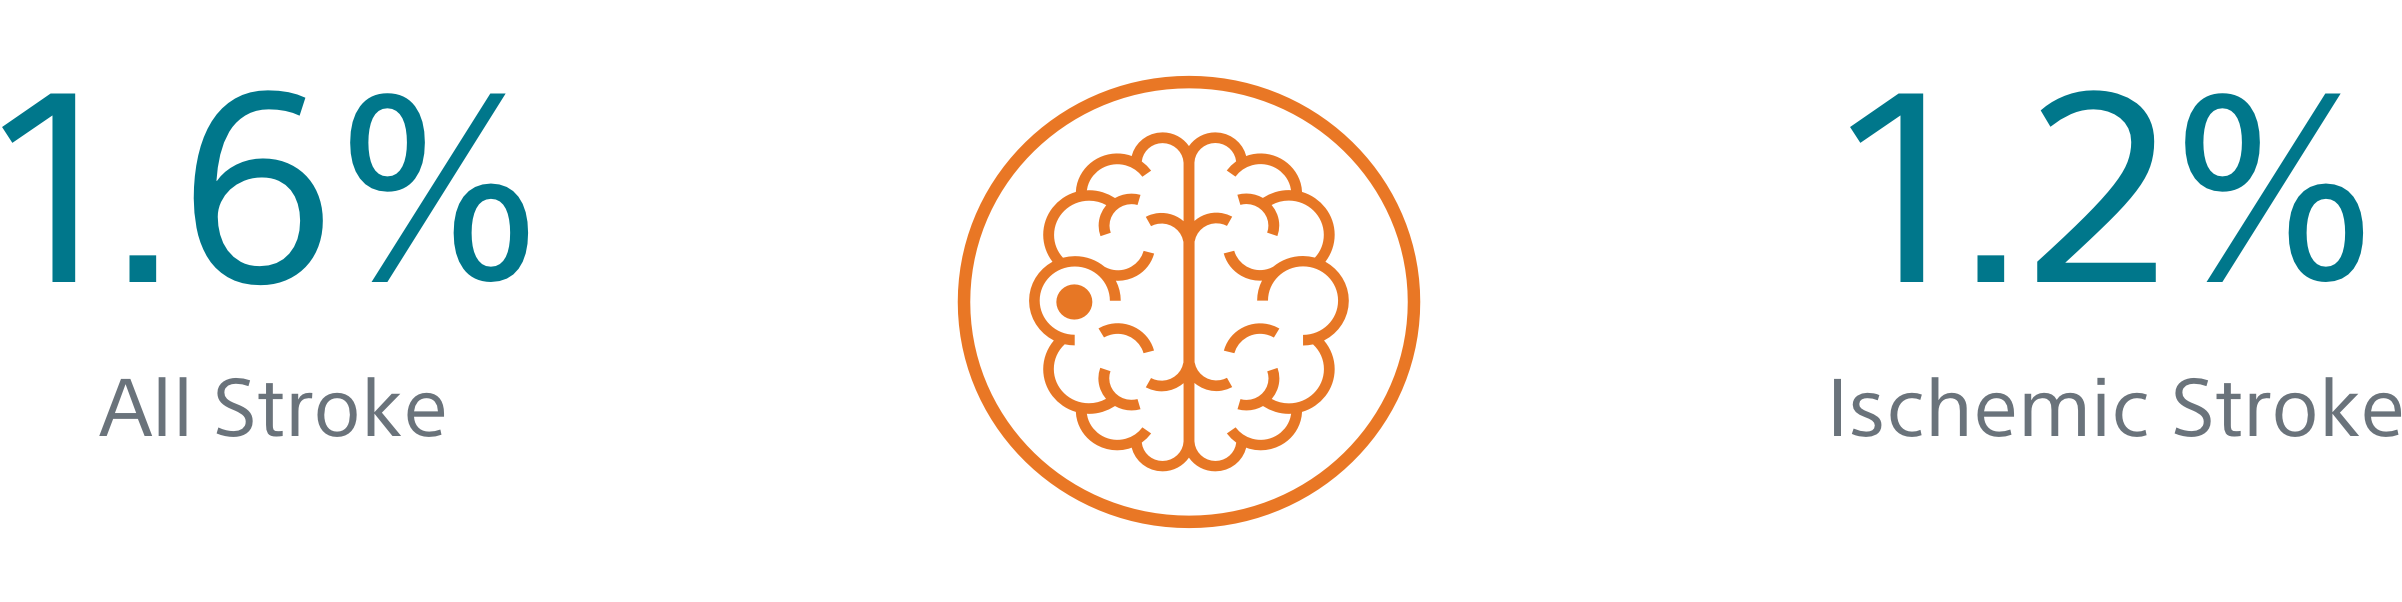 stroke statistics and orange brain icon